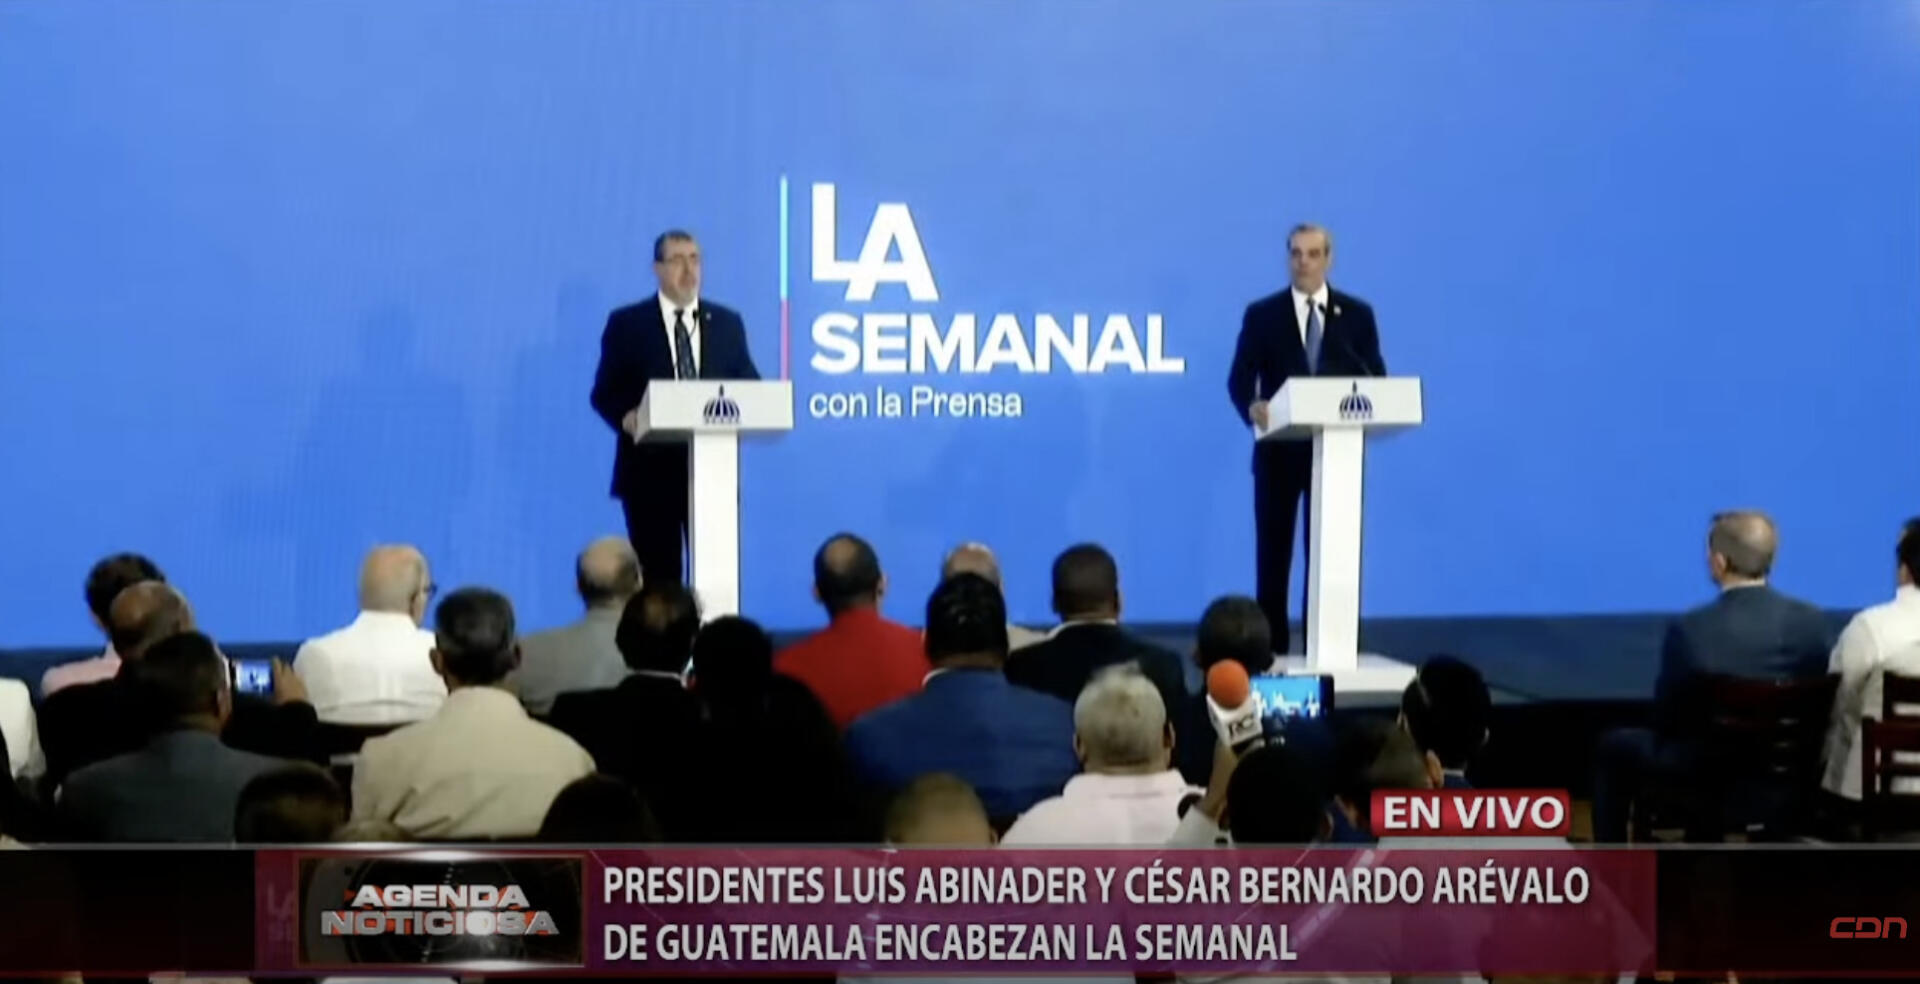 Bernardo Arévalo tomará posesion de Presidencia de Guatemala en enero. Foto: fuente externa